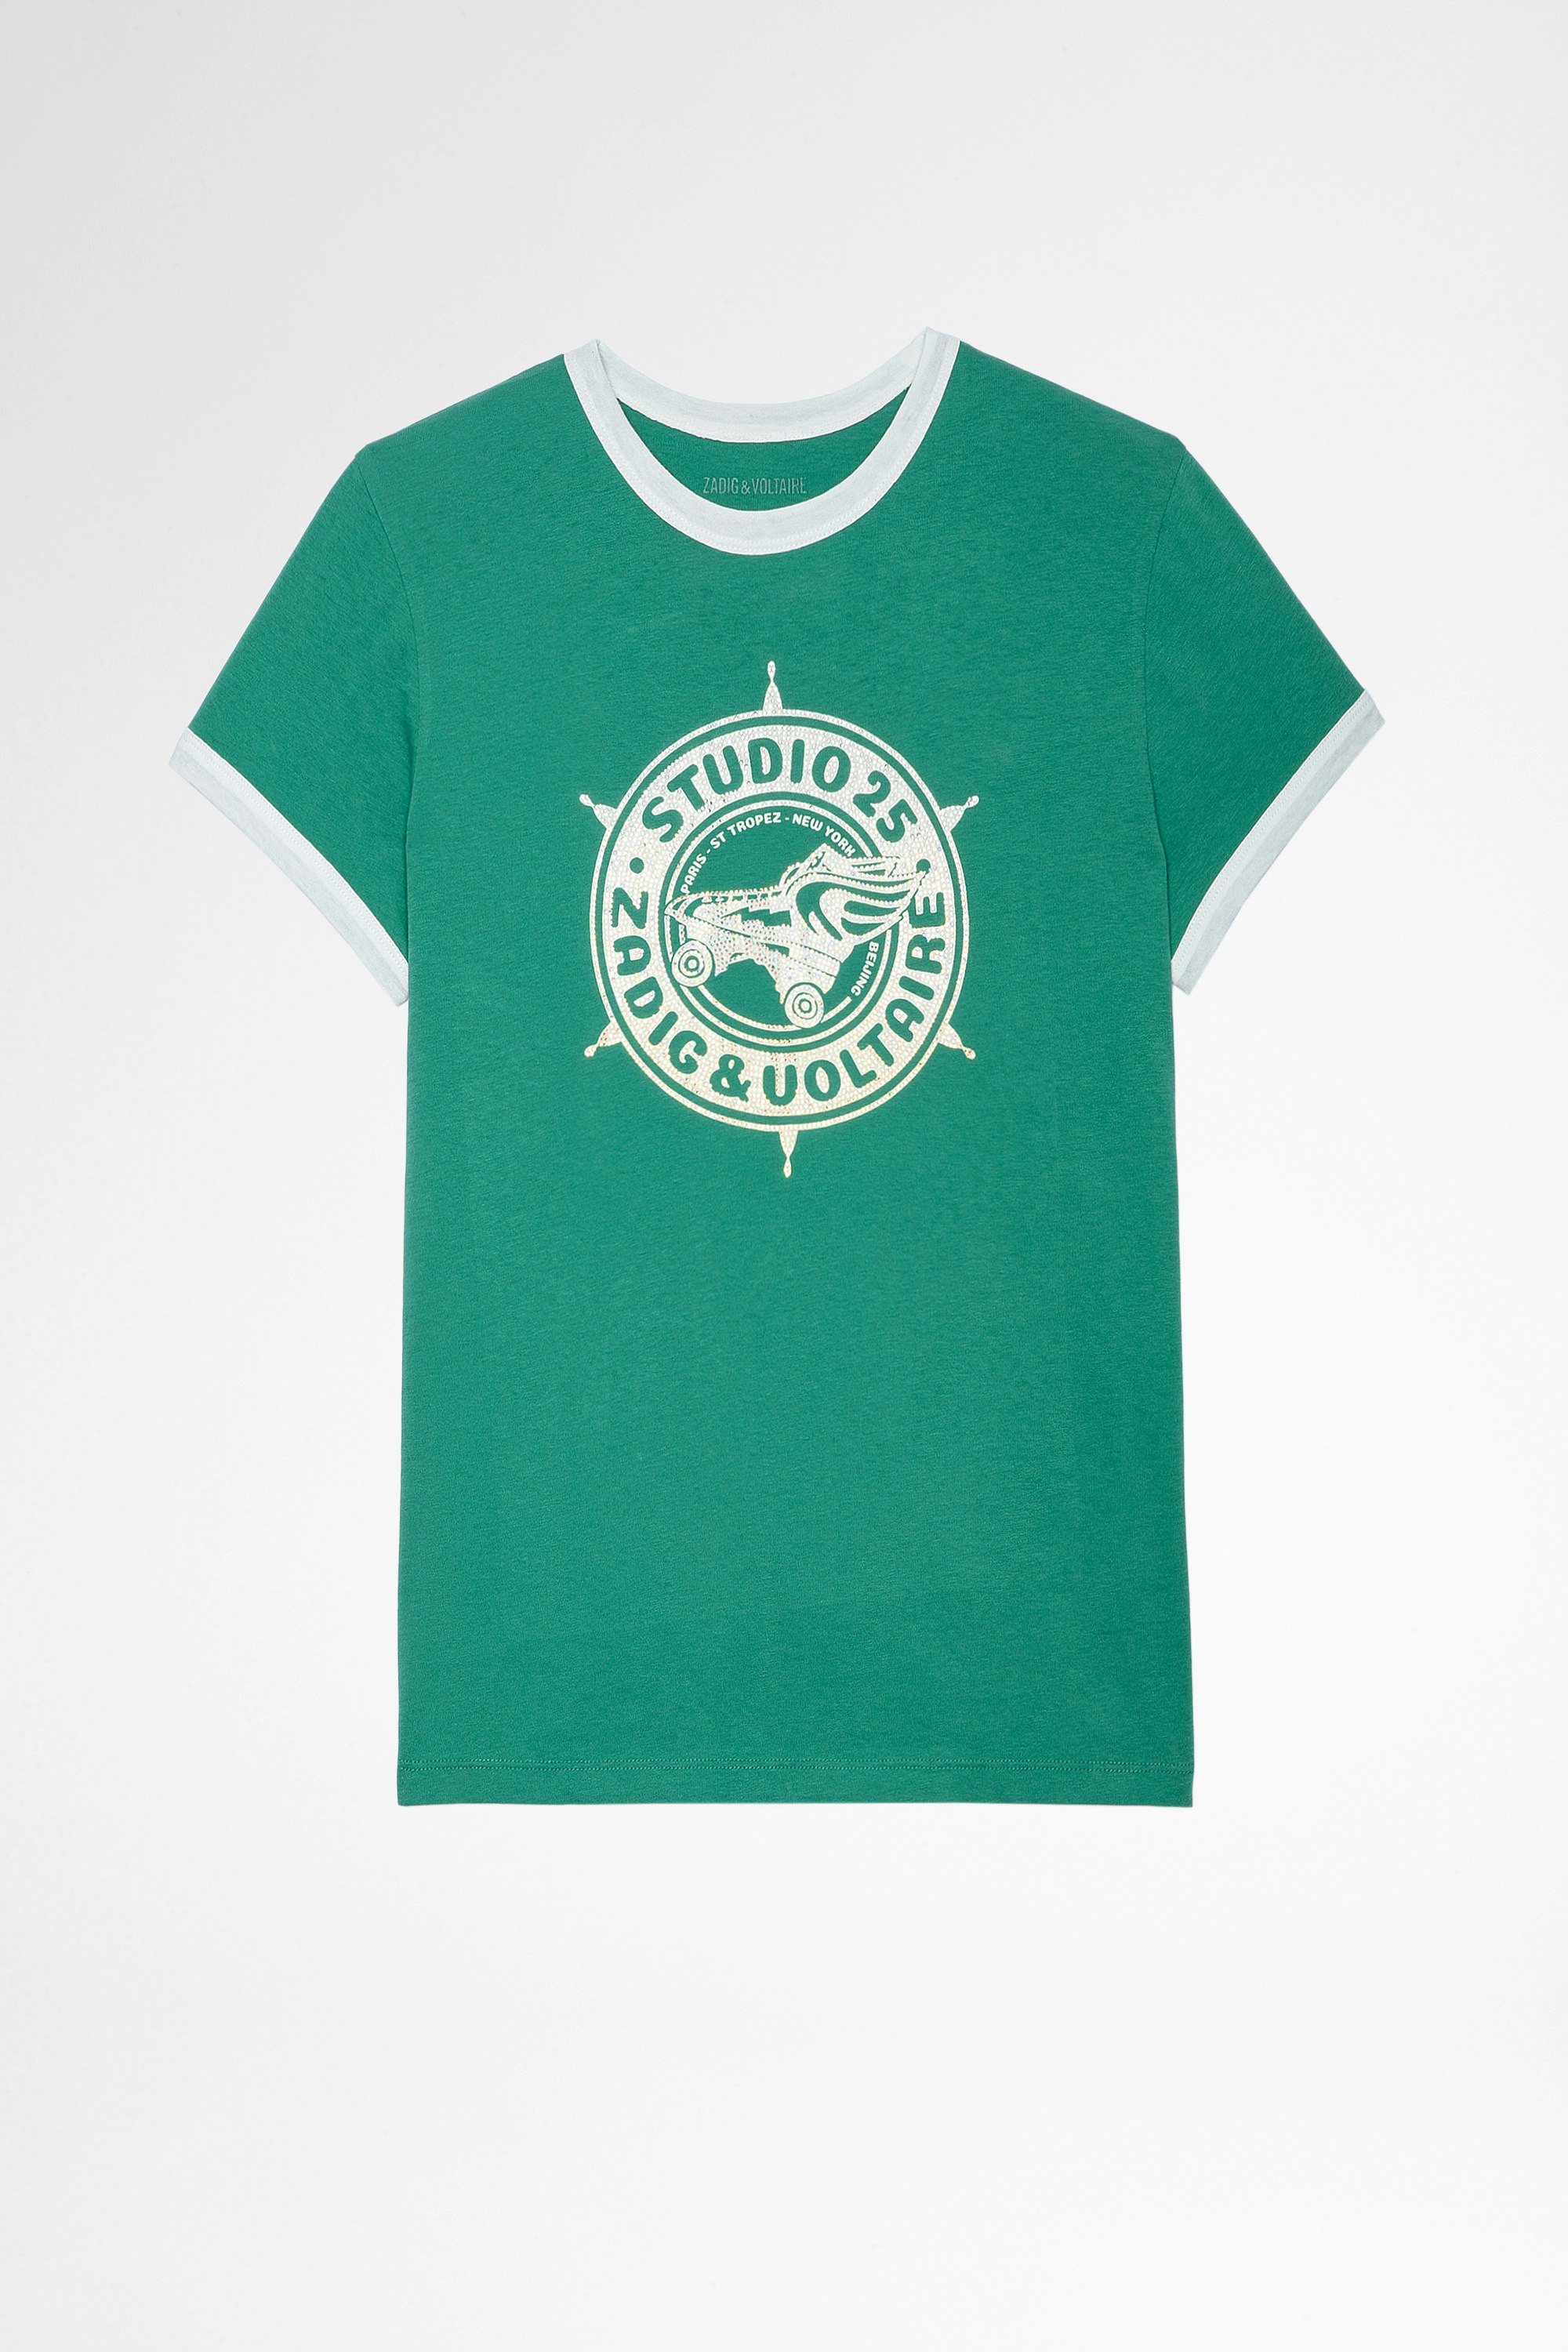 Camiseta Zoe Studio 25 Strass Camiseta verde de algodón con impresión de Studio 25 cubierta de cristales, para mujer